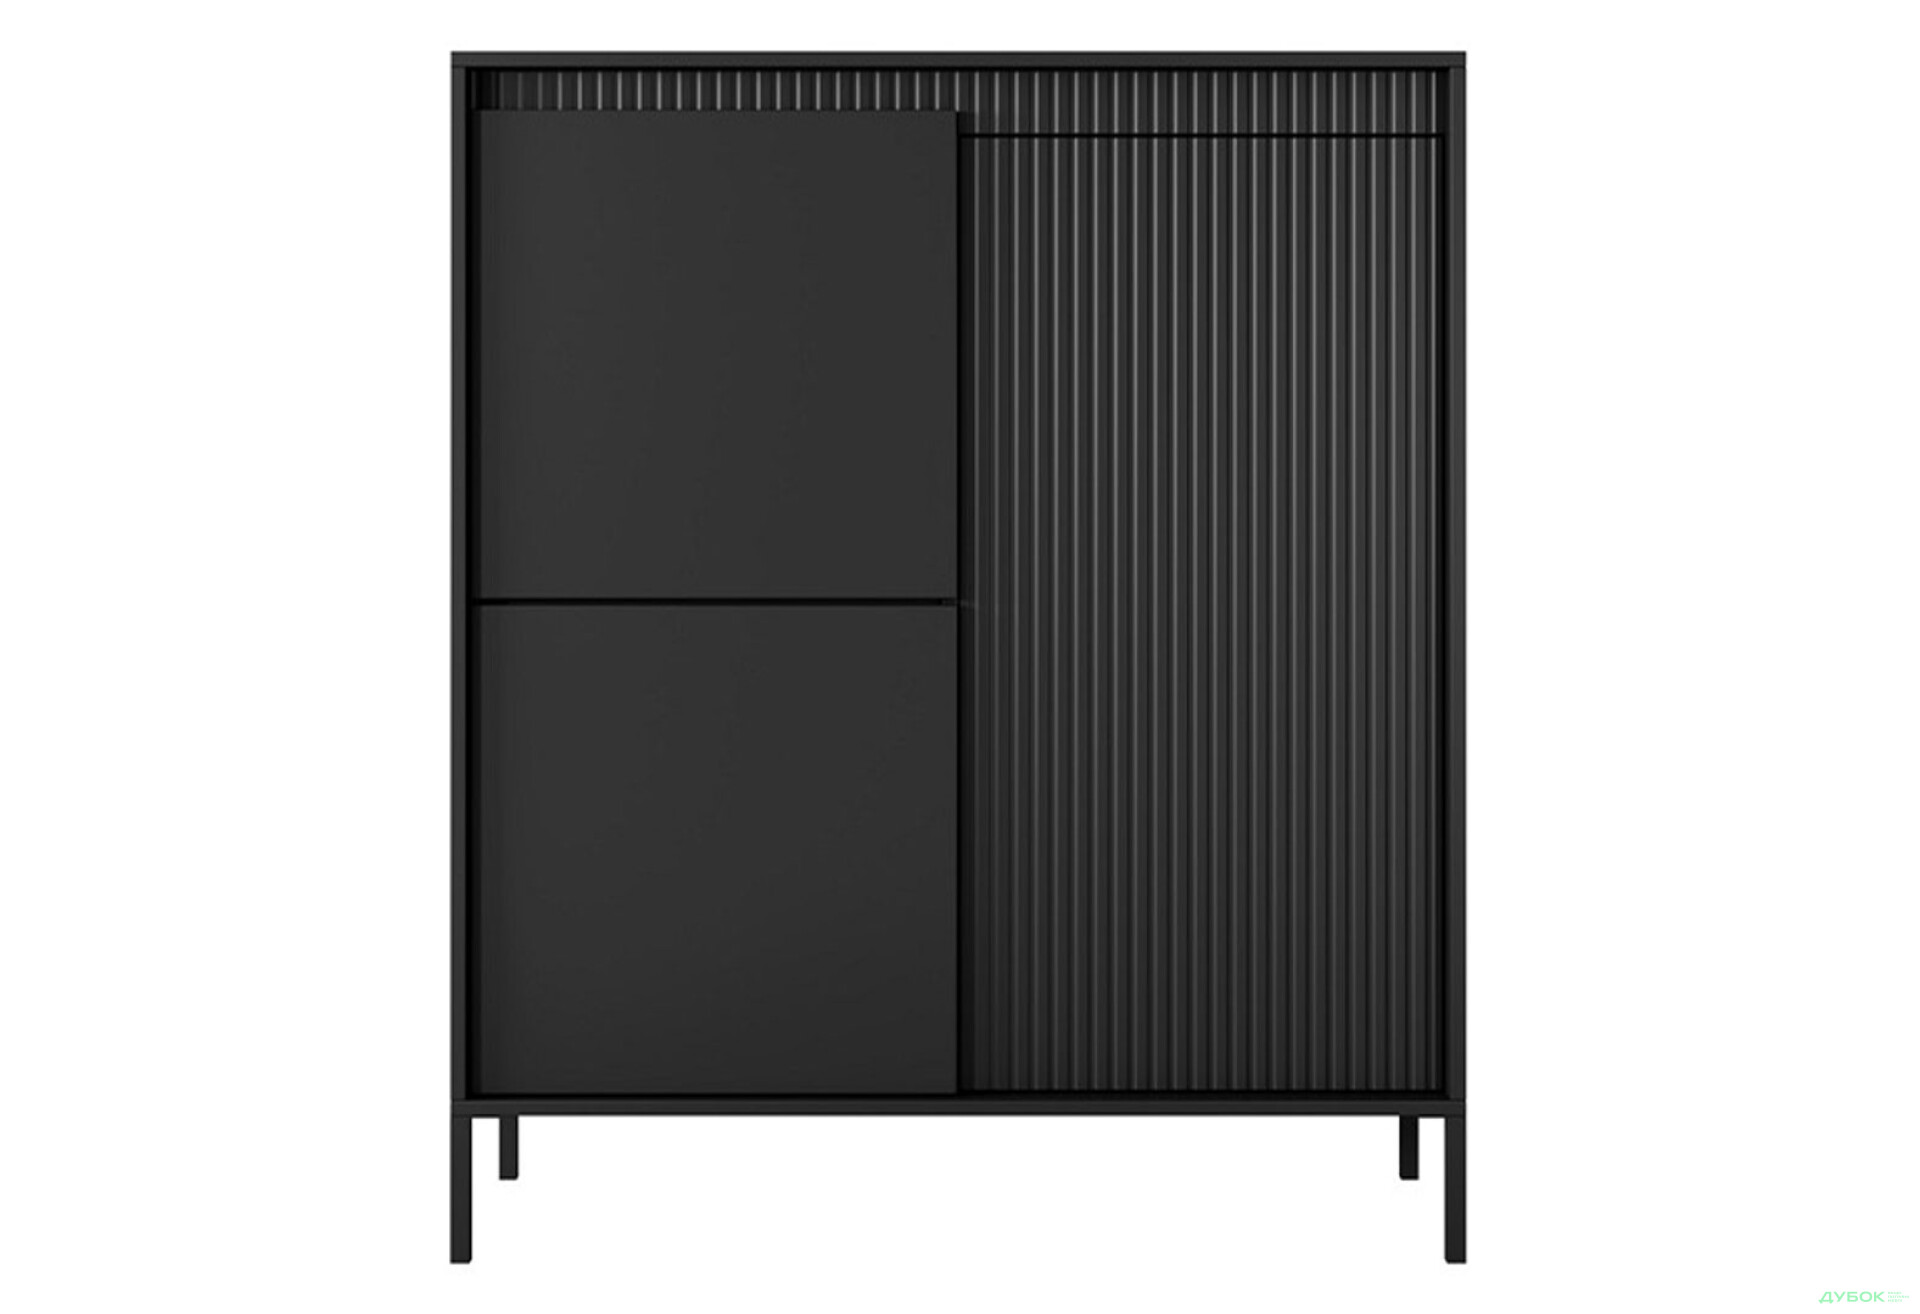 Фото 2 - Комод Perfect Home Сенсо / Senso 3-дверный 104 см, черный